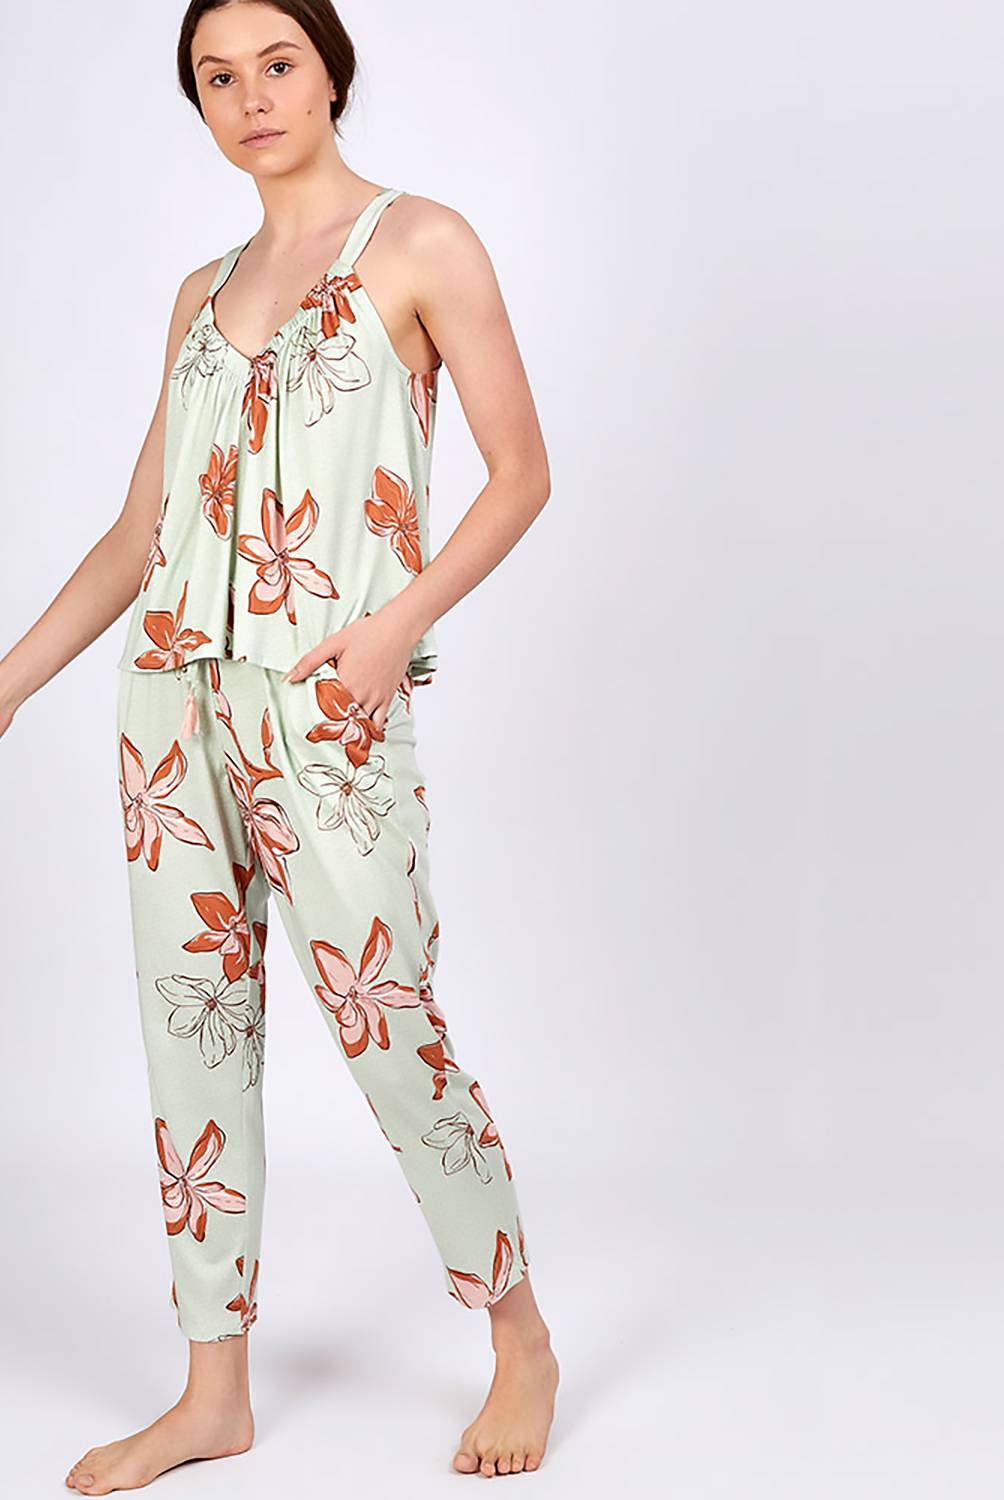 IN BLOOM - Pantalón Pijama Mujer In Bloom